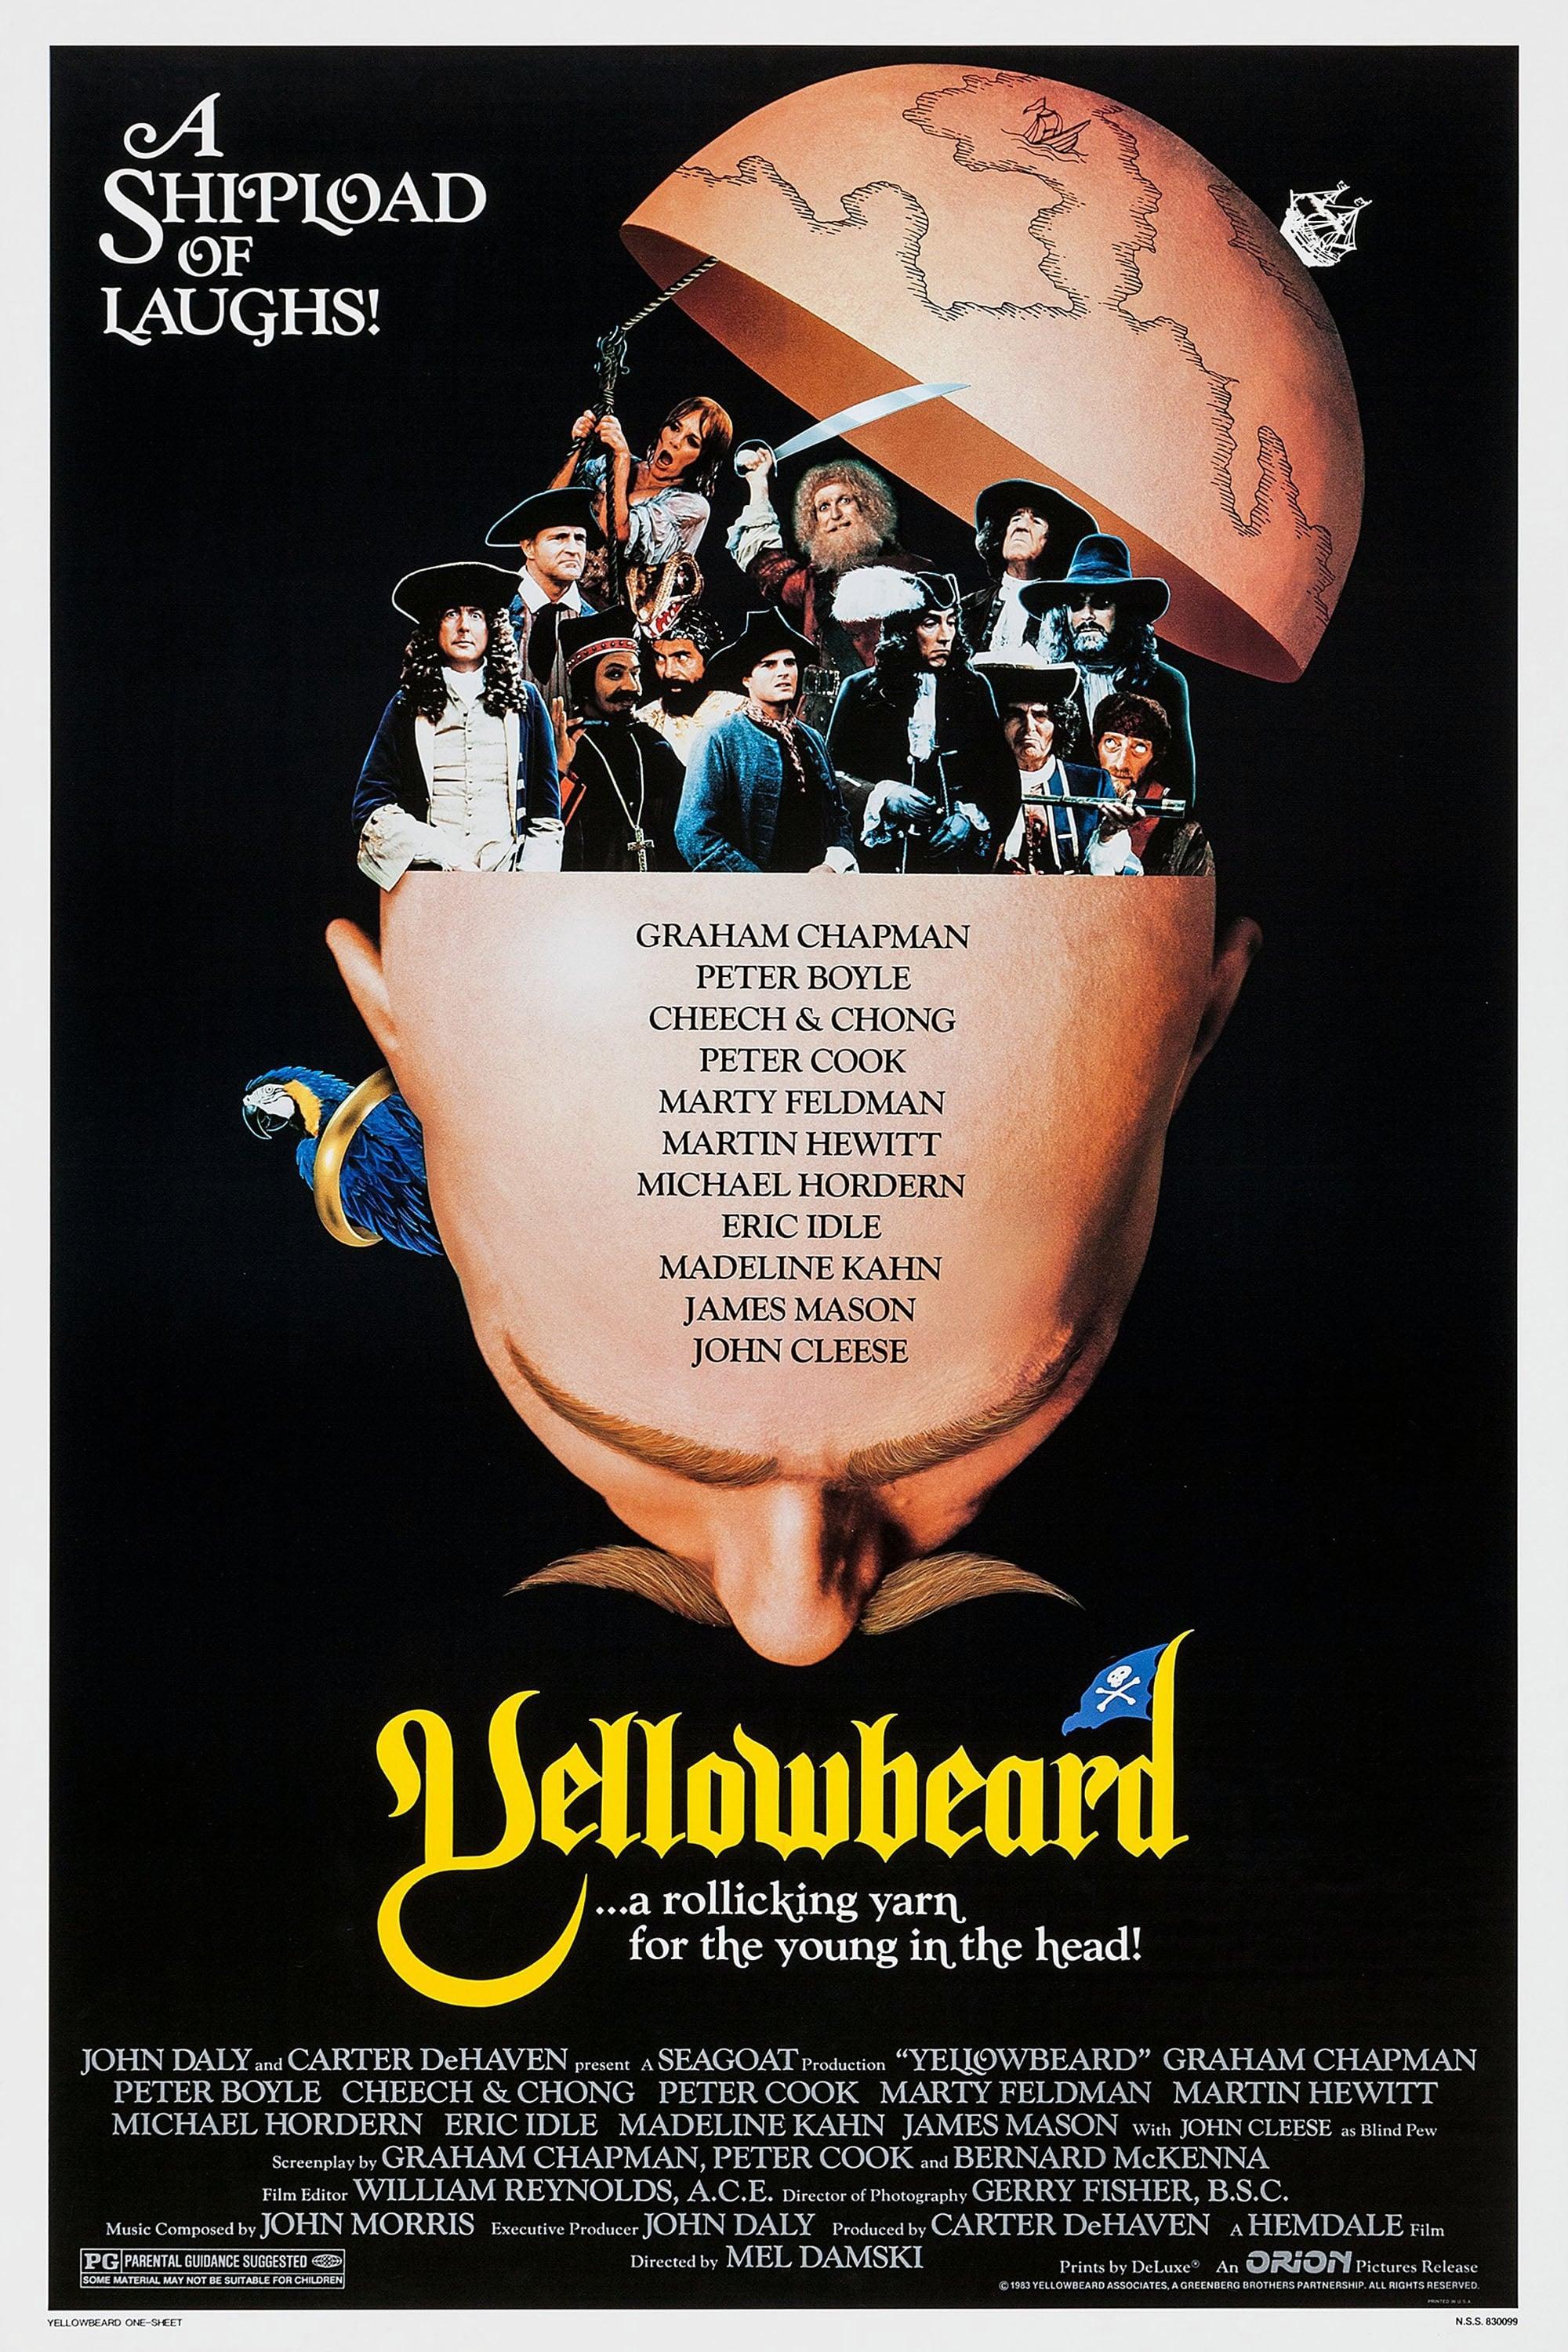 Yellowbeard poster